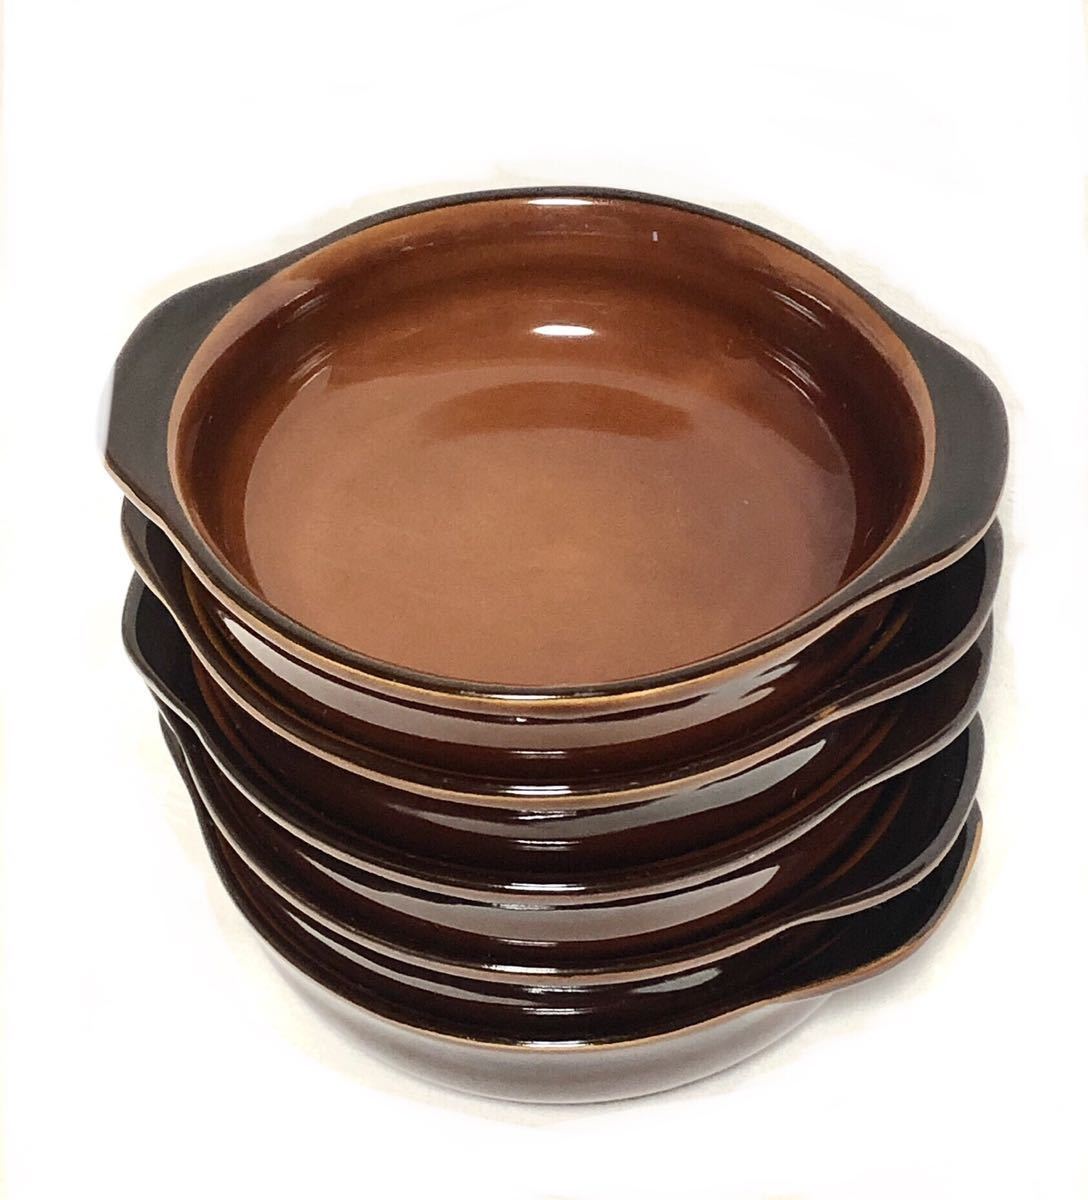 ■グラタン皿 5枚セット■ブラウン・17cm×14.8cm×4.2cm・耐熱・ドリア・オーブン・焼き物・焼き料理・洋食の画像1